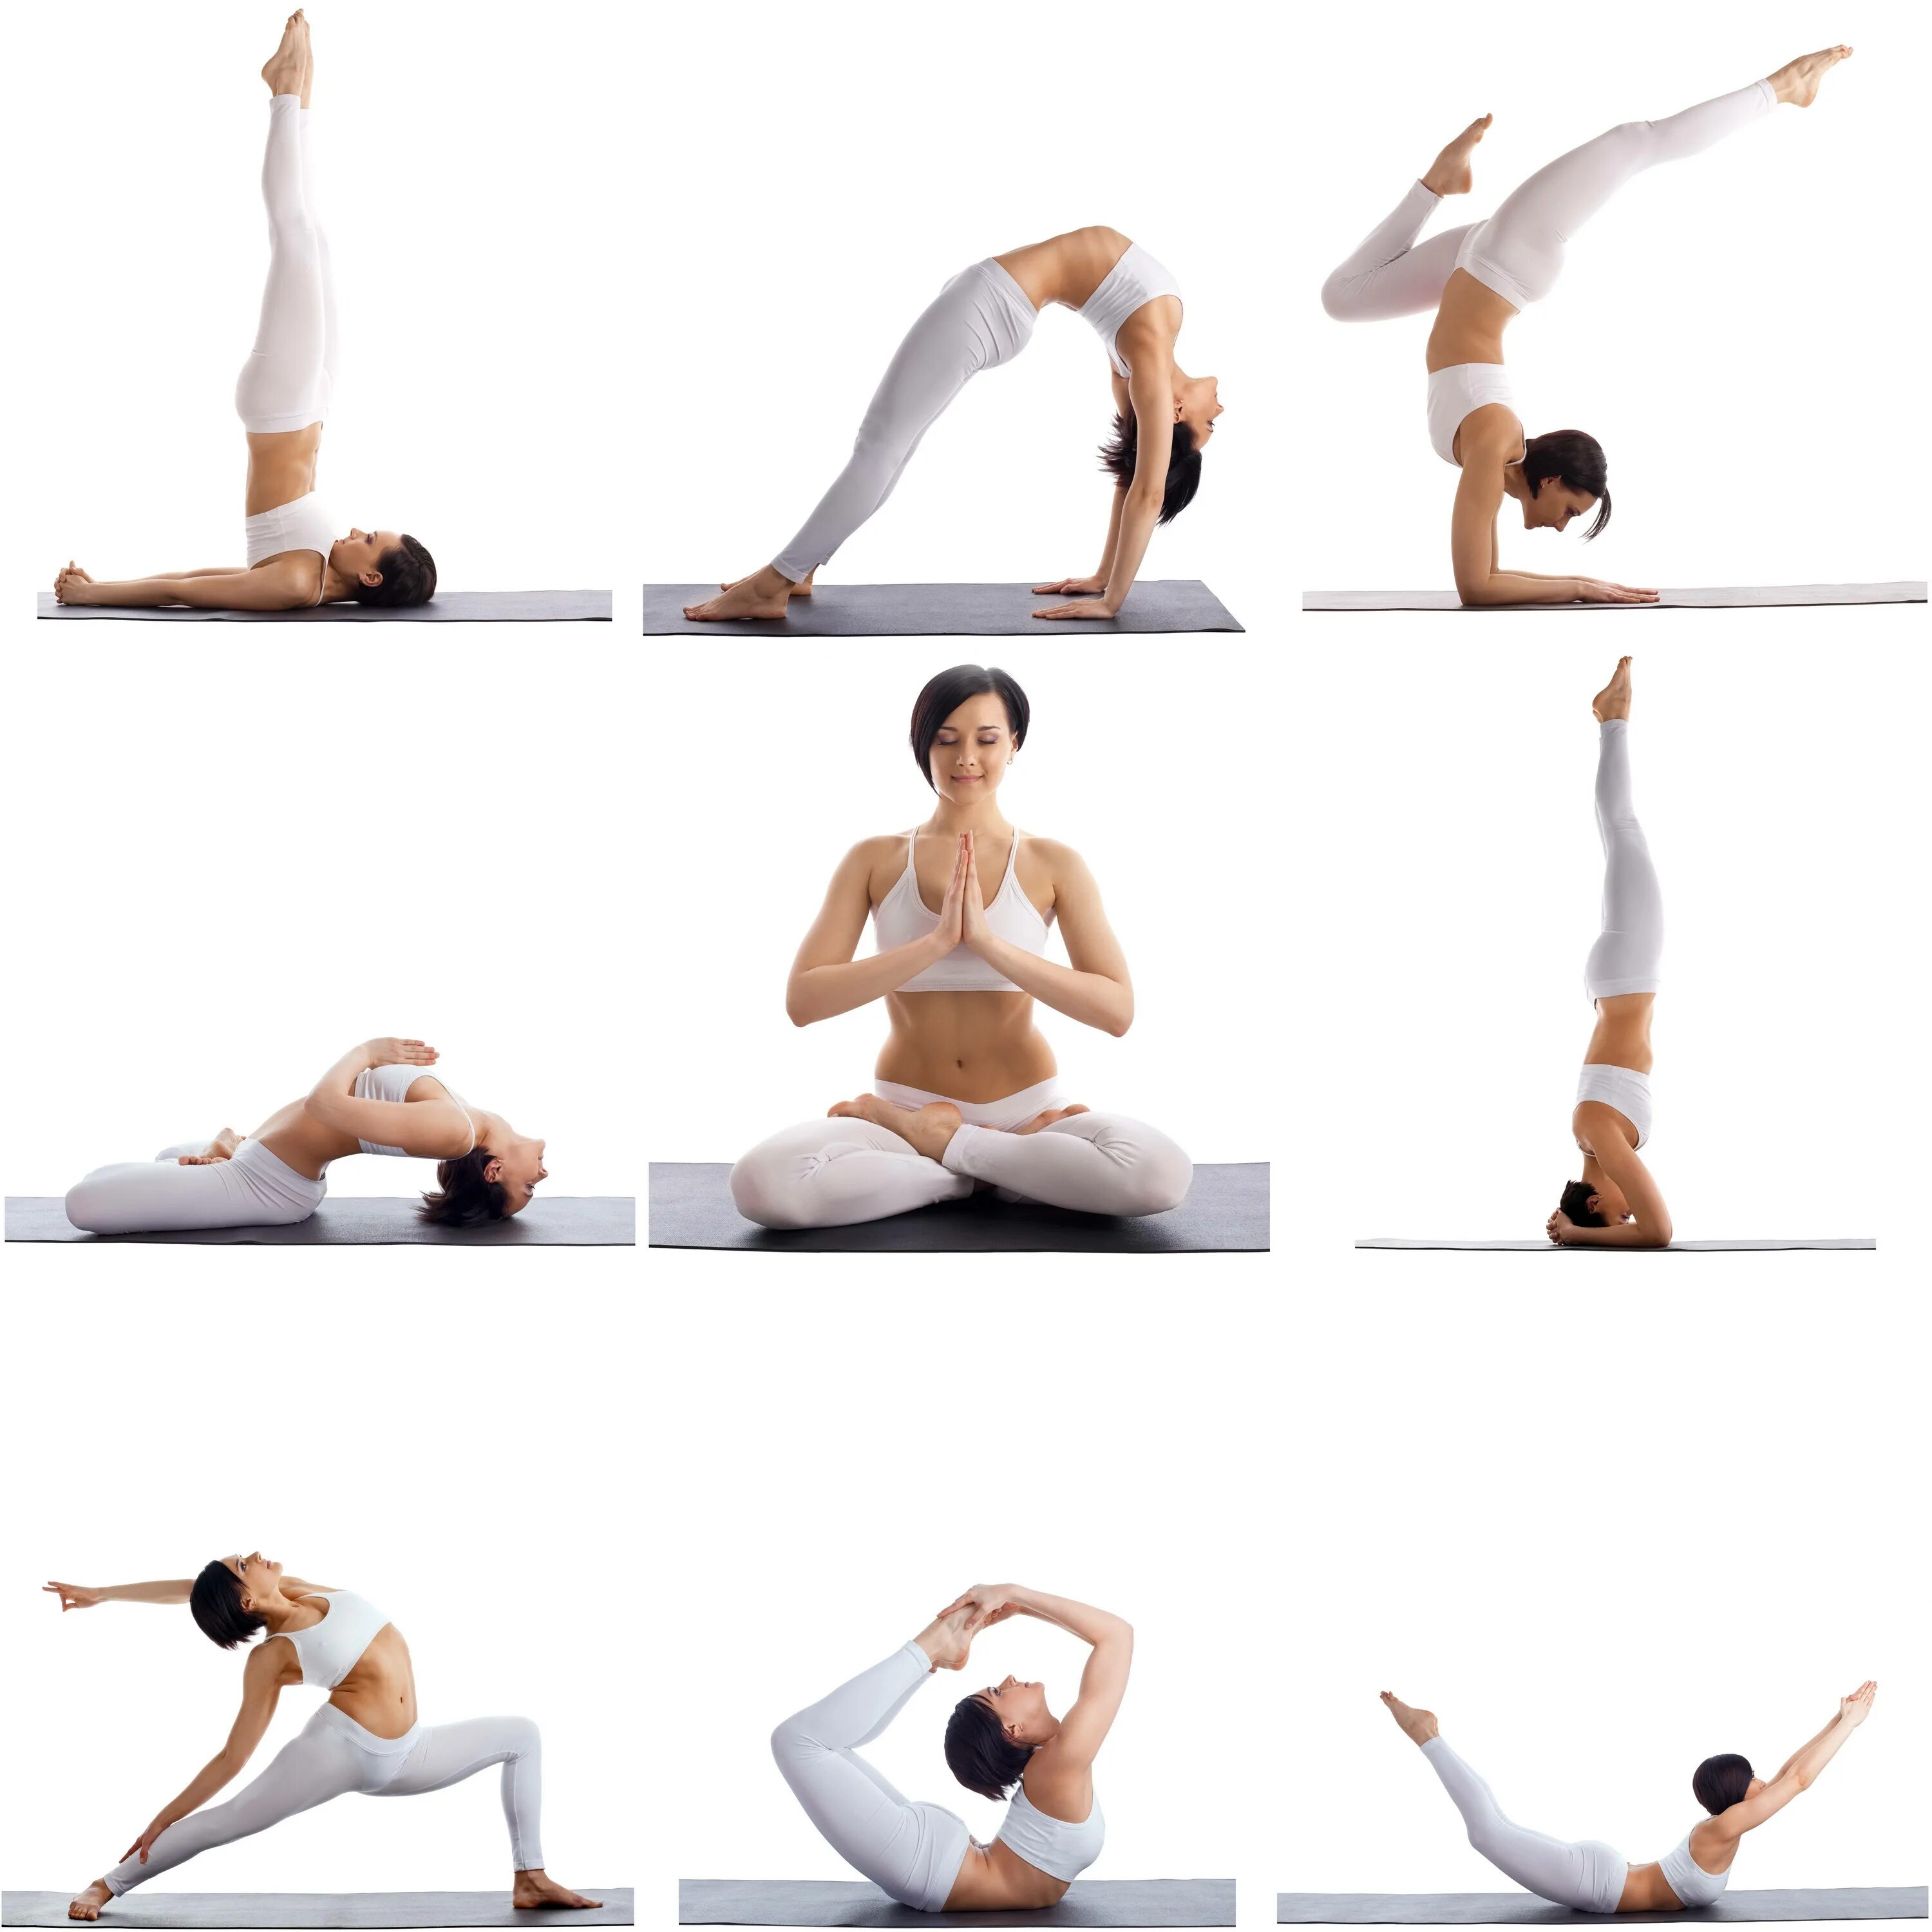 Йога 1 занятия. Основные асаны хатха йоги для начинающих. Хатха-йога комплекс асан. Хатха йога упражнения для начинающих. Комплекс асан хатха йоги.